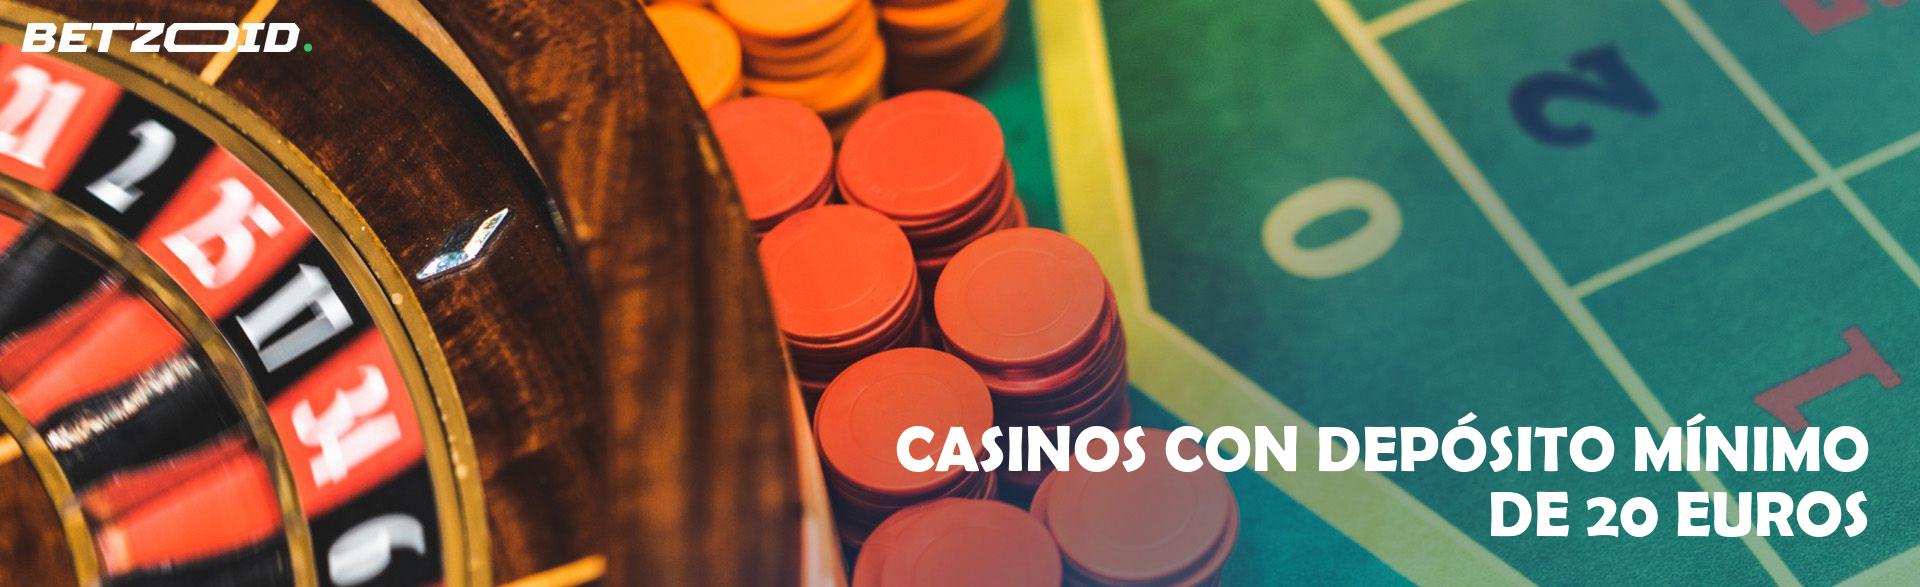 Casinos con Depósito Mínimo de 20 Euros.